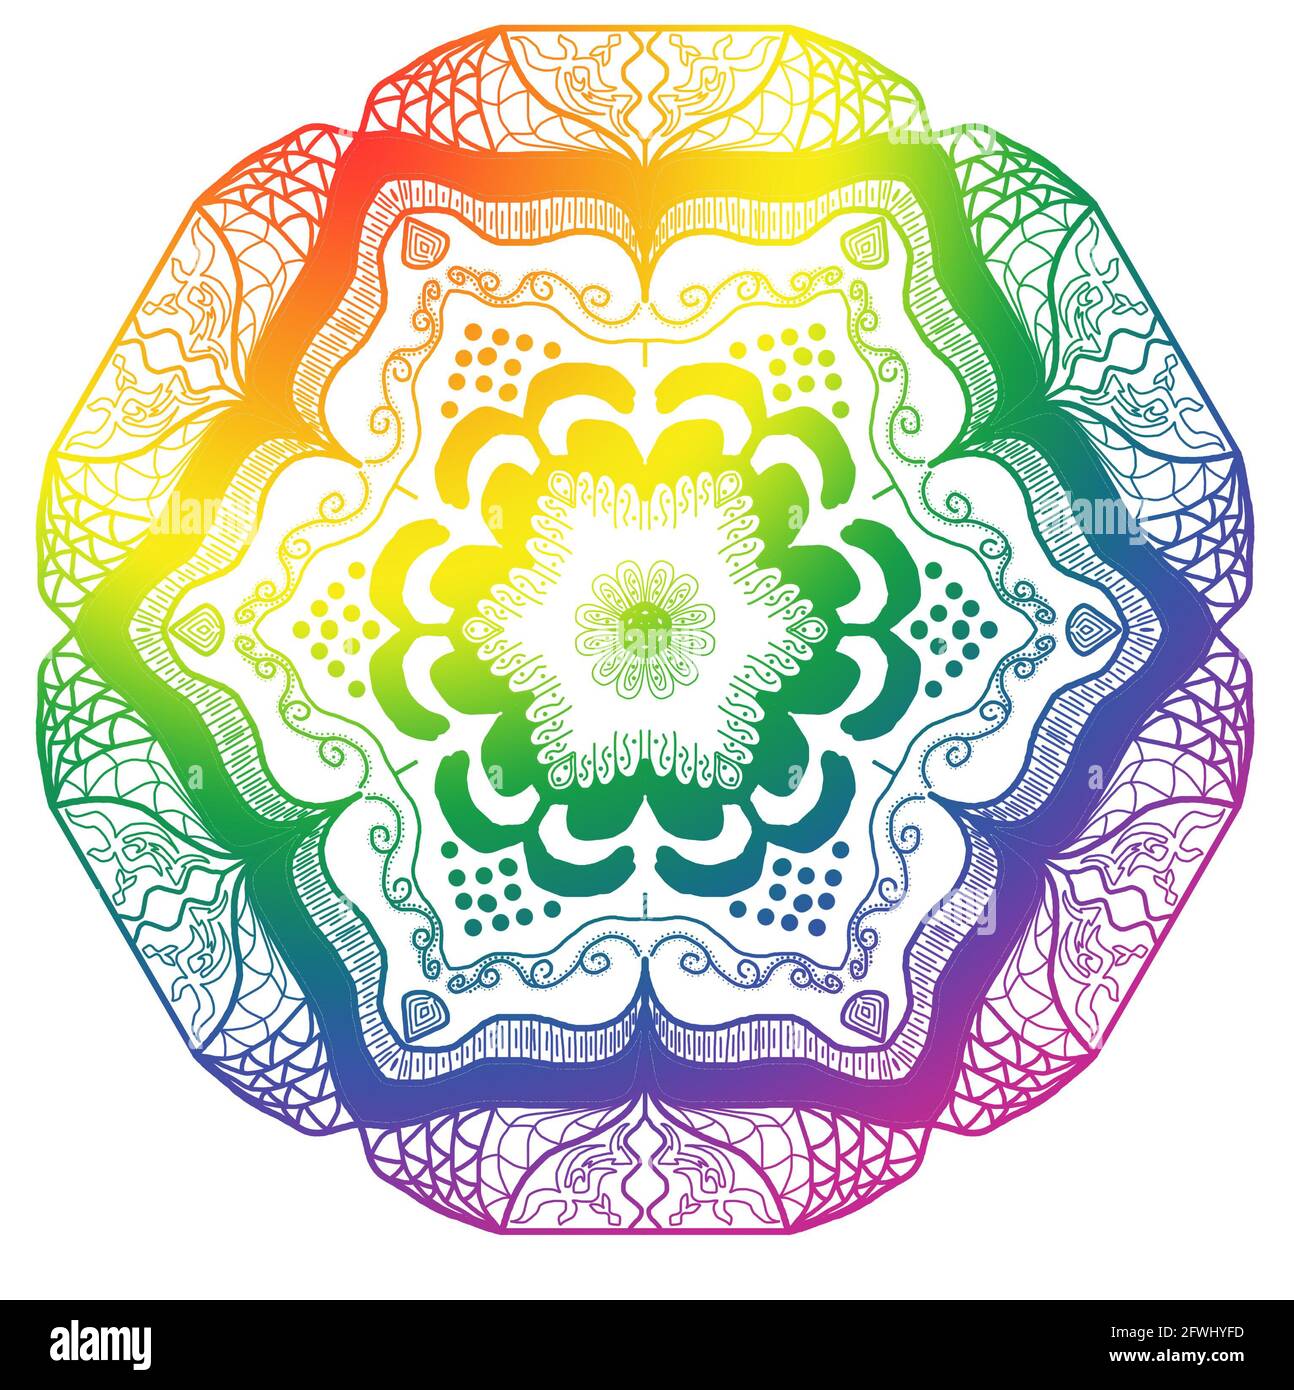 Diseño de mandala dibujado a mano con colores de orgullo arcoiris sobre fondo blanco. Ideal para festivales, fondos de pantalla, escritorio. Foto de stock